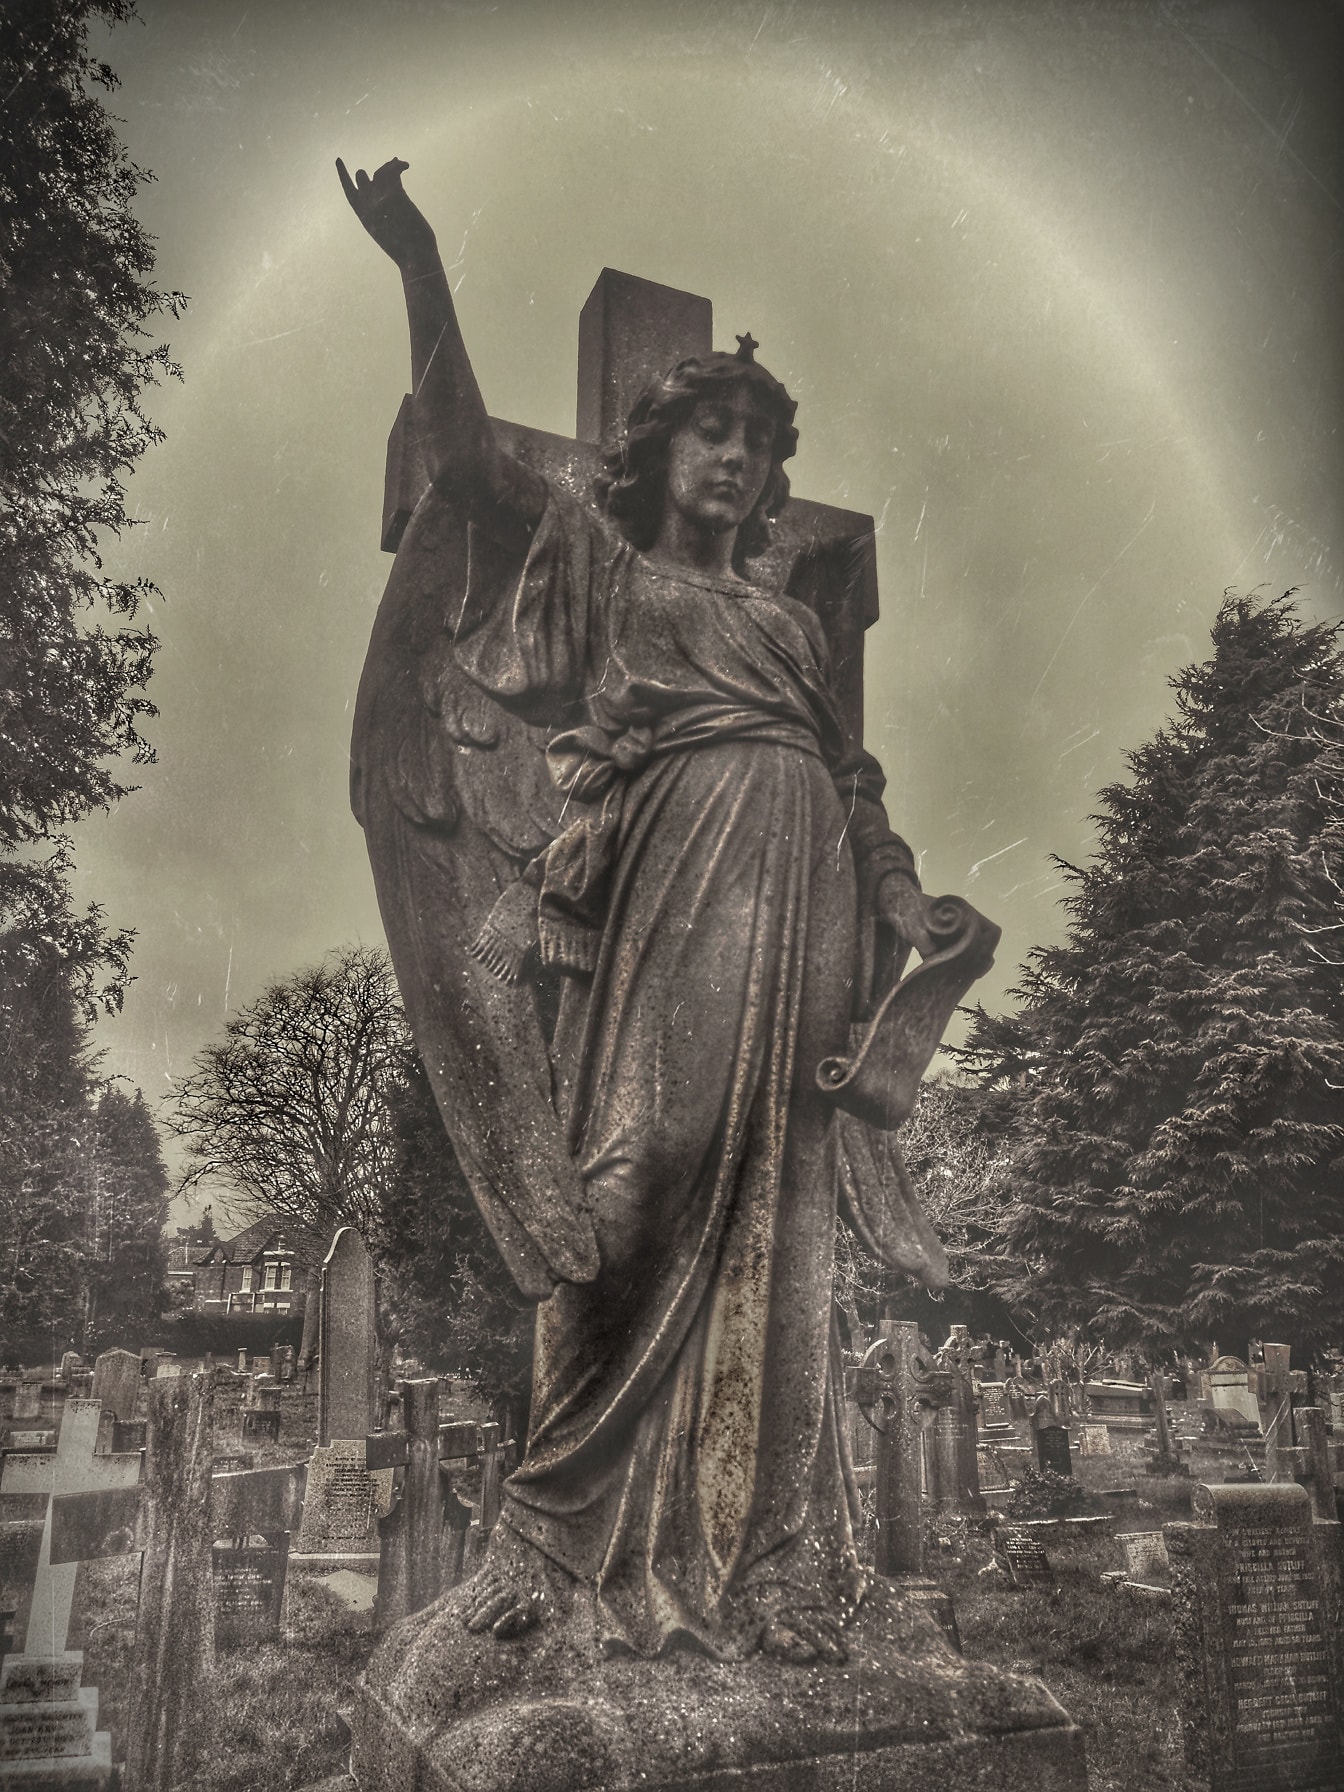 Anioł młoda kobieta rzeźba na krzyżu na cmentarzu